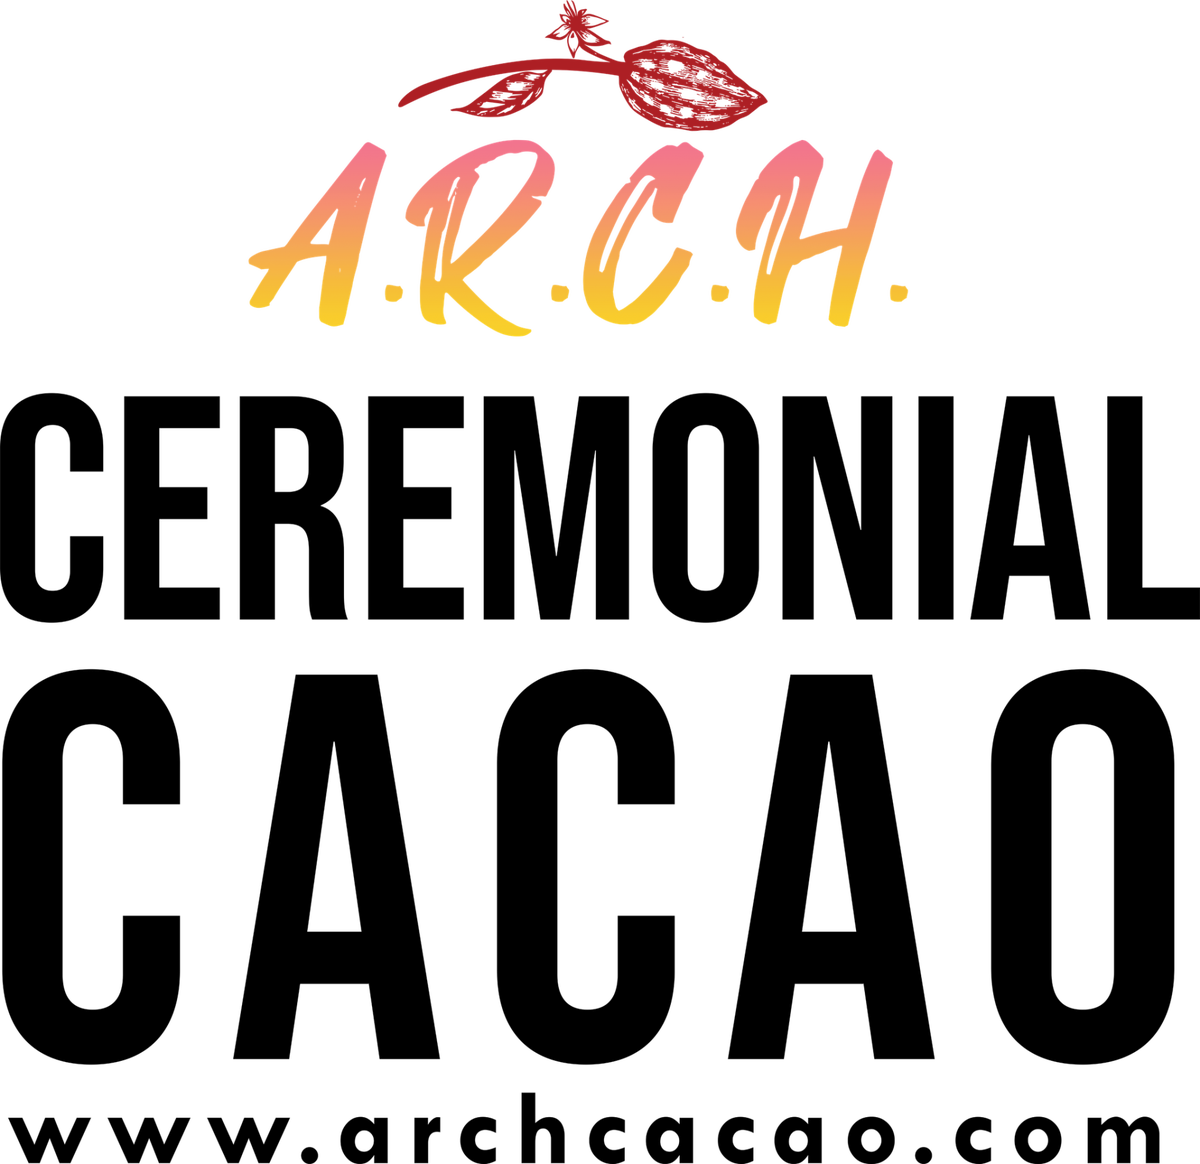 www.archireland.com